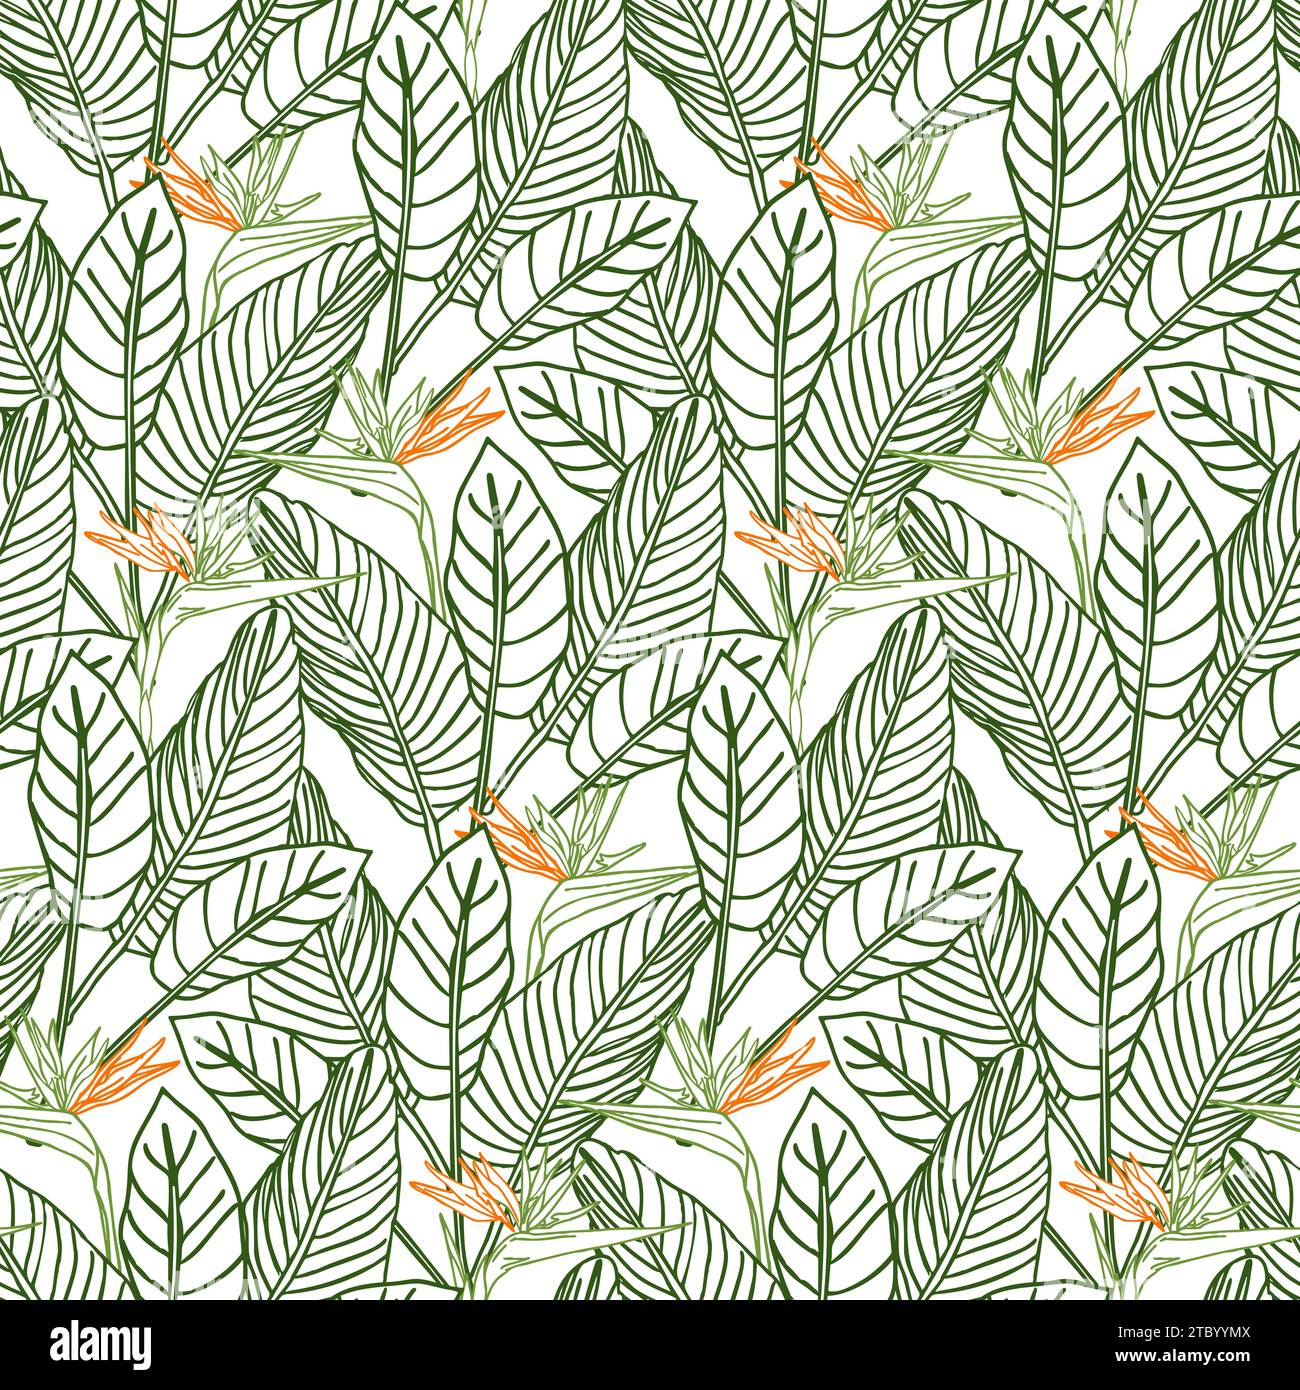 Oiseau de paradis fleur tropical strelitzia floral sans couture motif avec des couleurs vertes et orange. Fond vectoriel pour impressions, tissu, papiers peints, wr Illustration de Vecteur